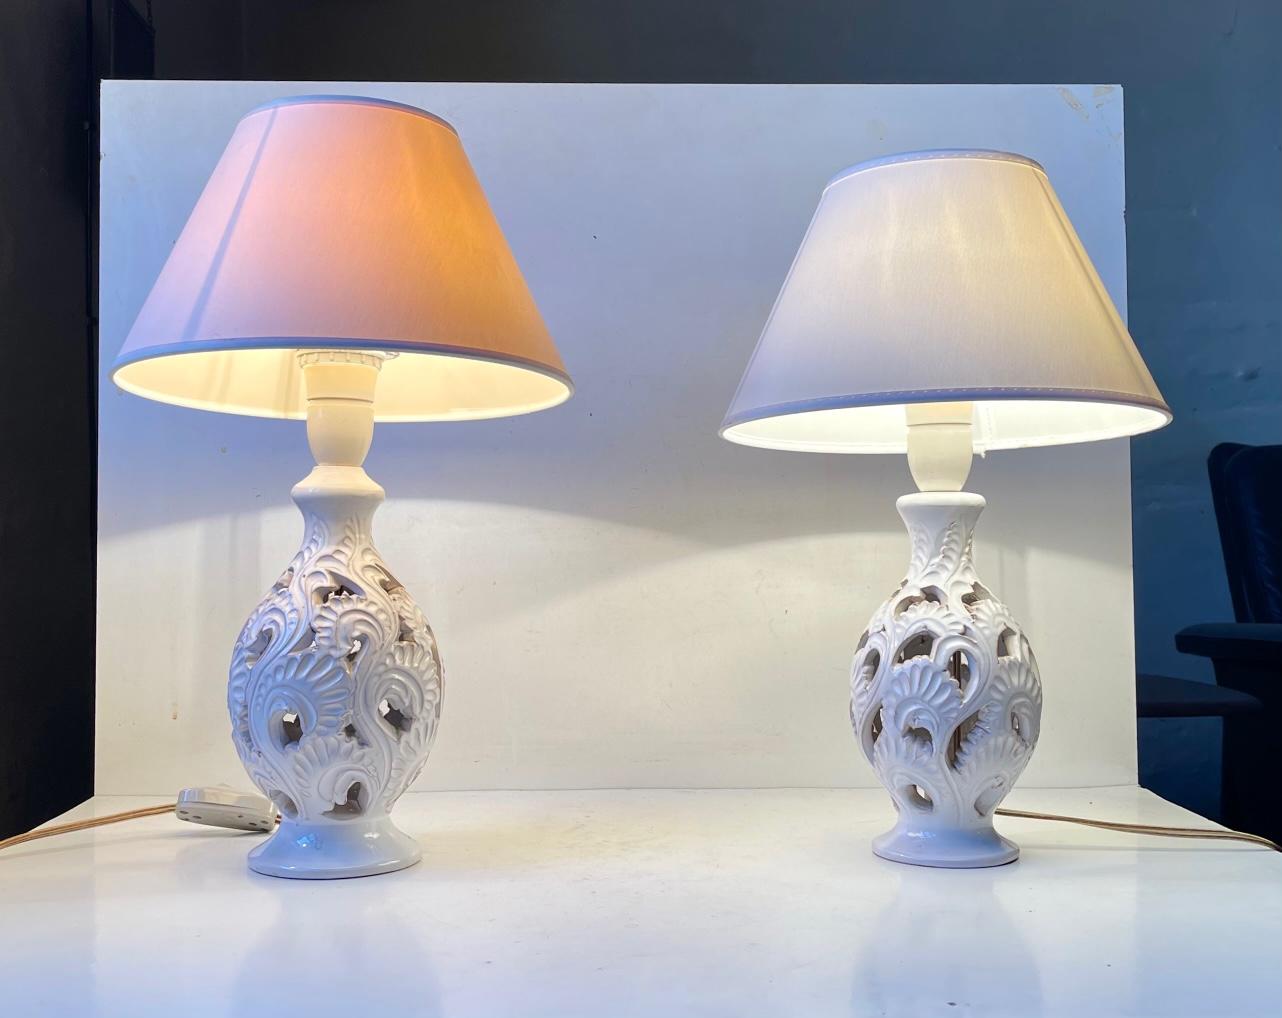 Un ensemble de lampes de table danoises des années 1940 en glaçure blanche avec des impressions florales perforées sur le 